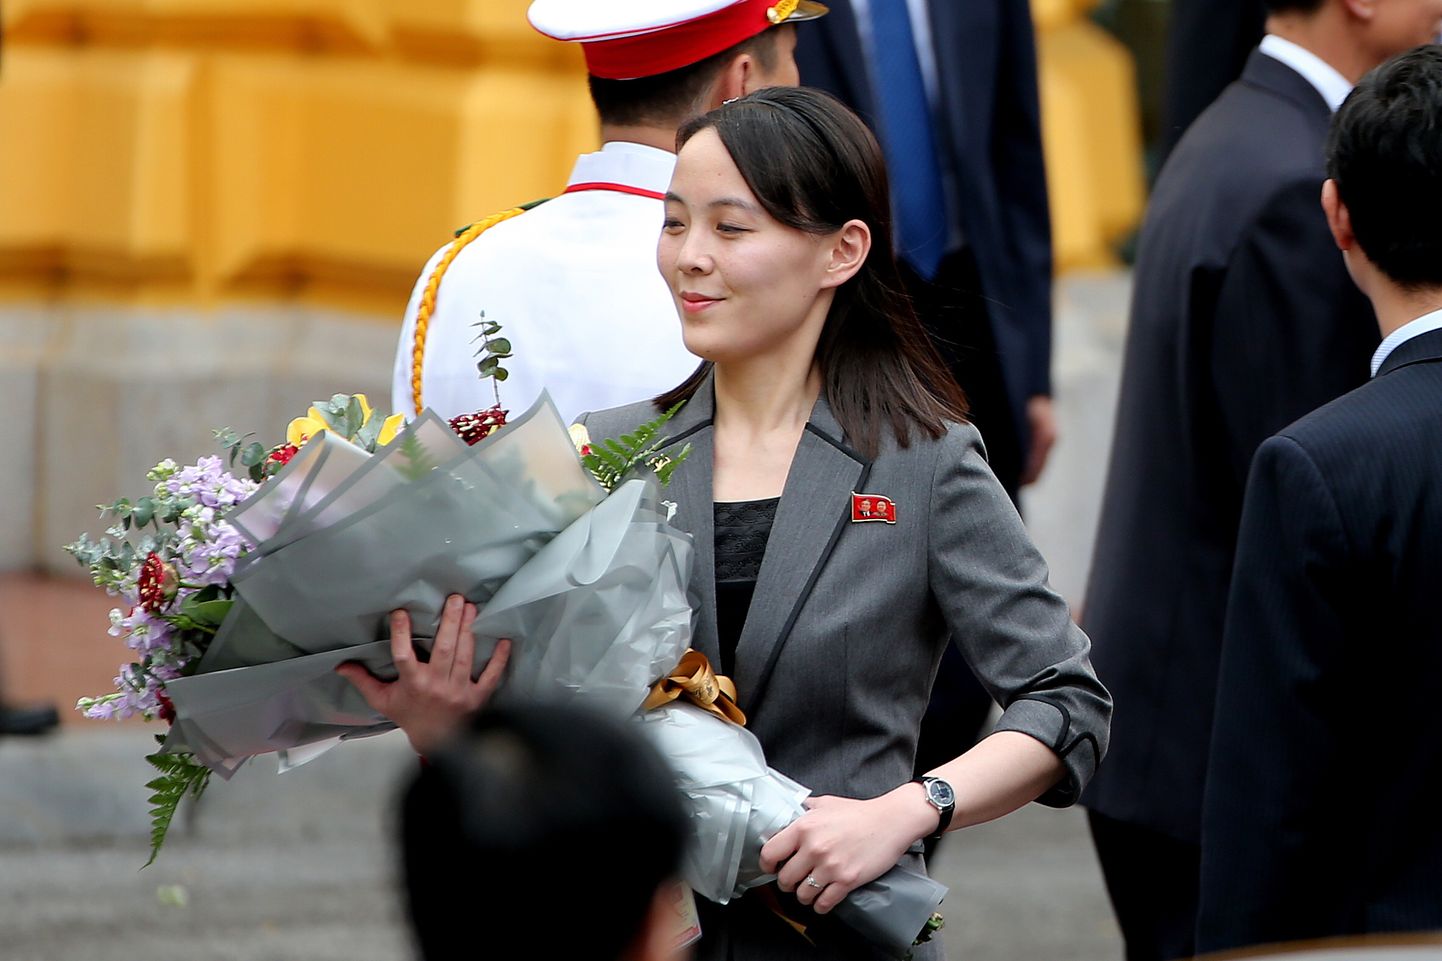 Põhja-Korea liidri Kim Jong-uni õde Kim Yo-jong 1. märtsil 2019 Vietnamis Hanois vastuvõtutseremoonial saadud buketiga